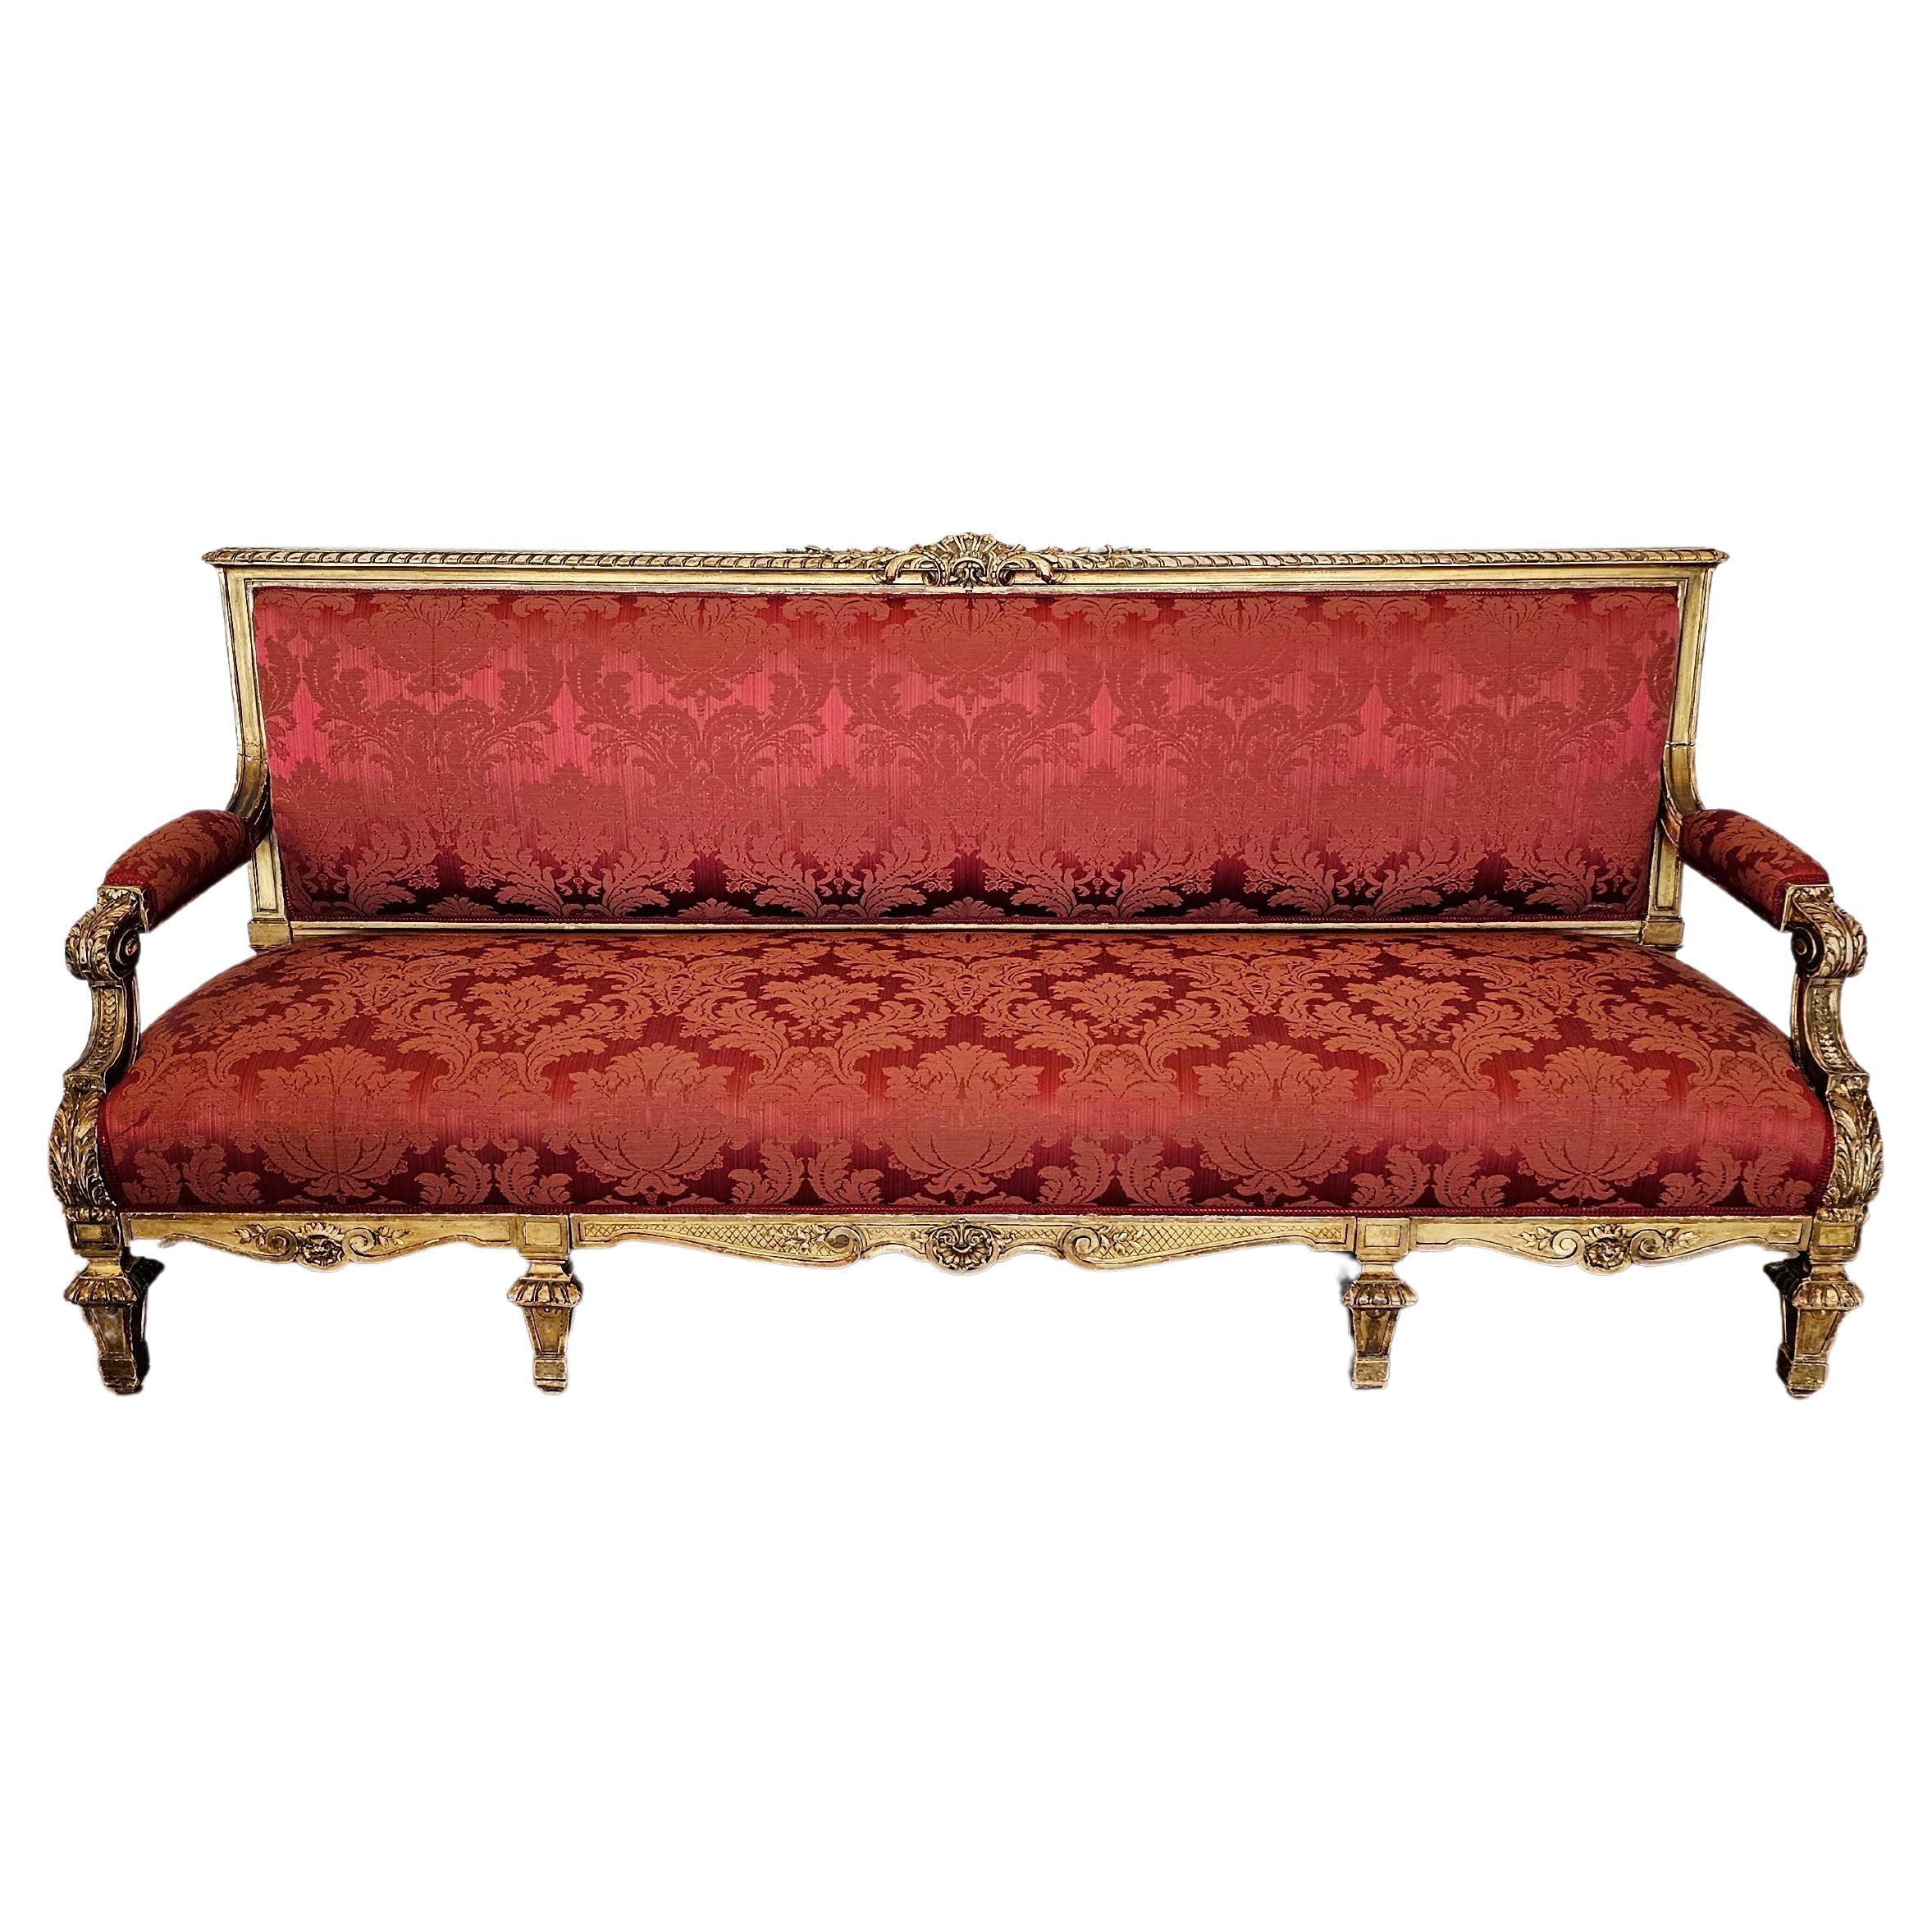 Ensemble canapé long en bois doré et damassé, style Upholstering, de style Louis XVI